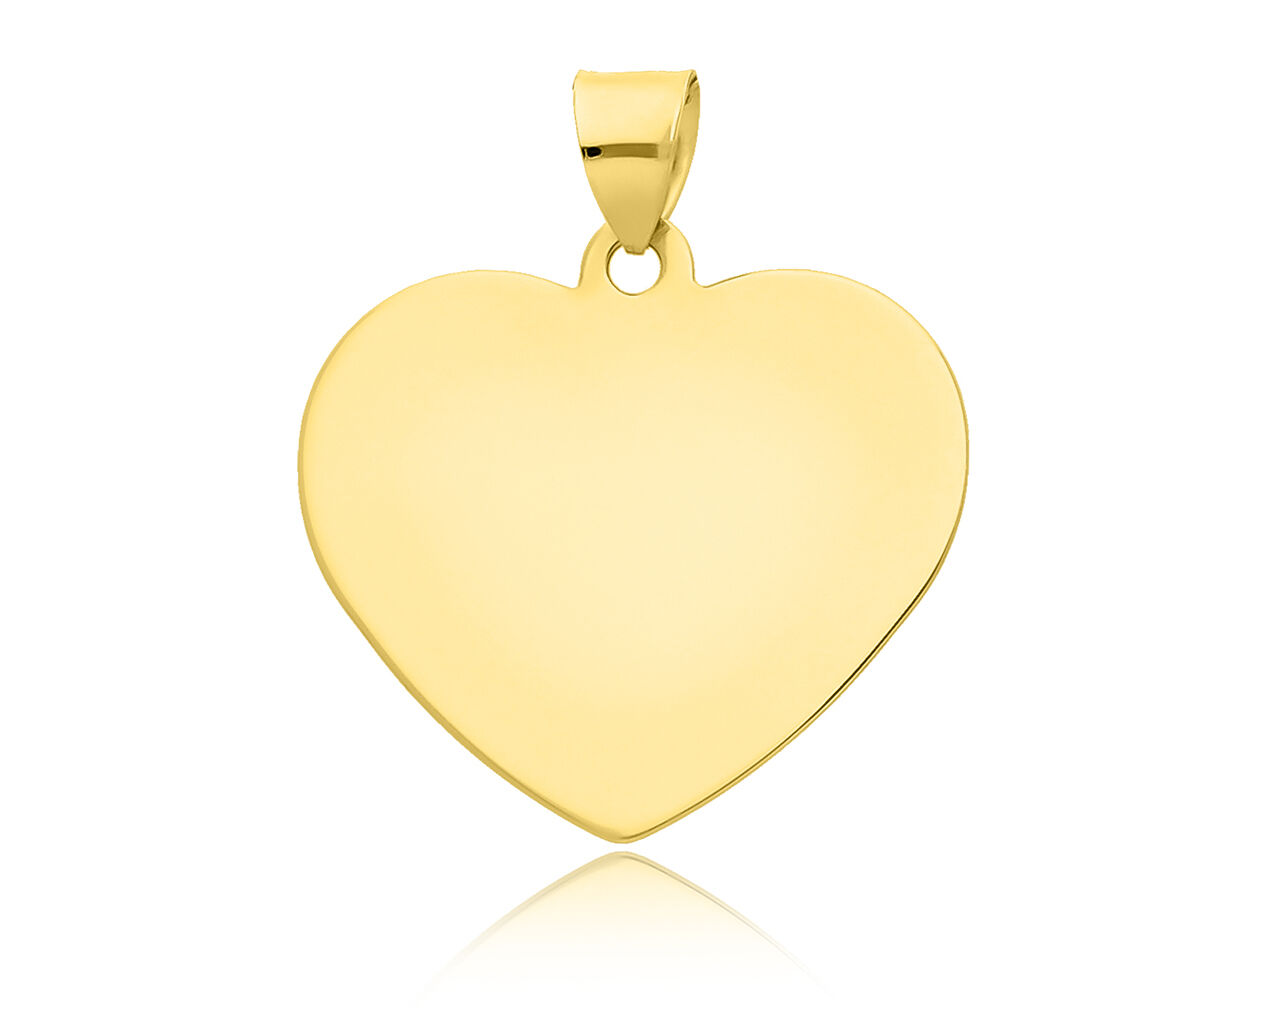 Zawieszka złota w kształcie serca gładkiego